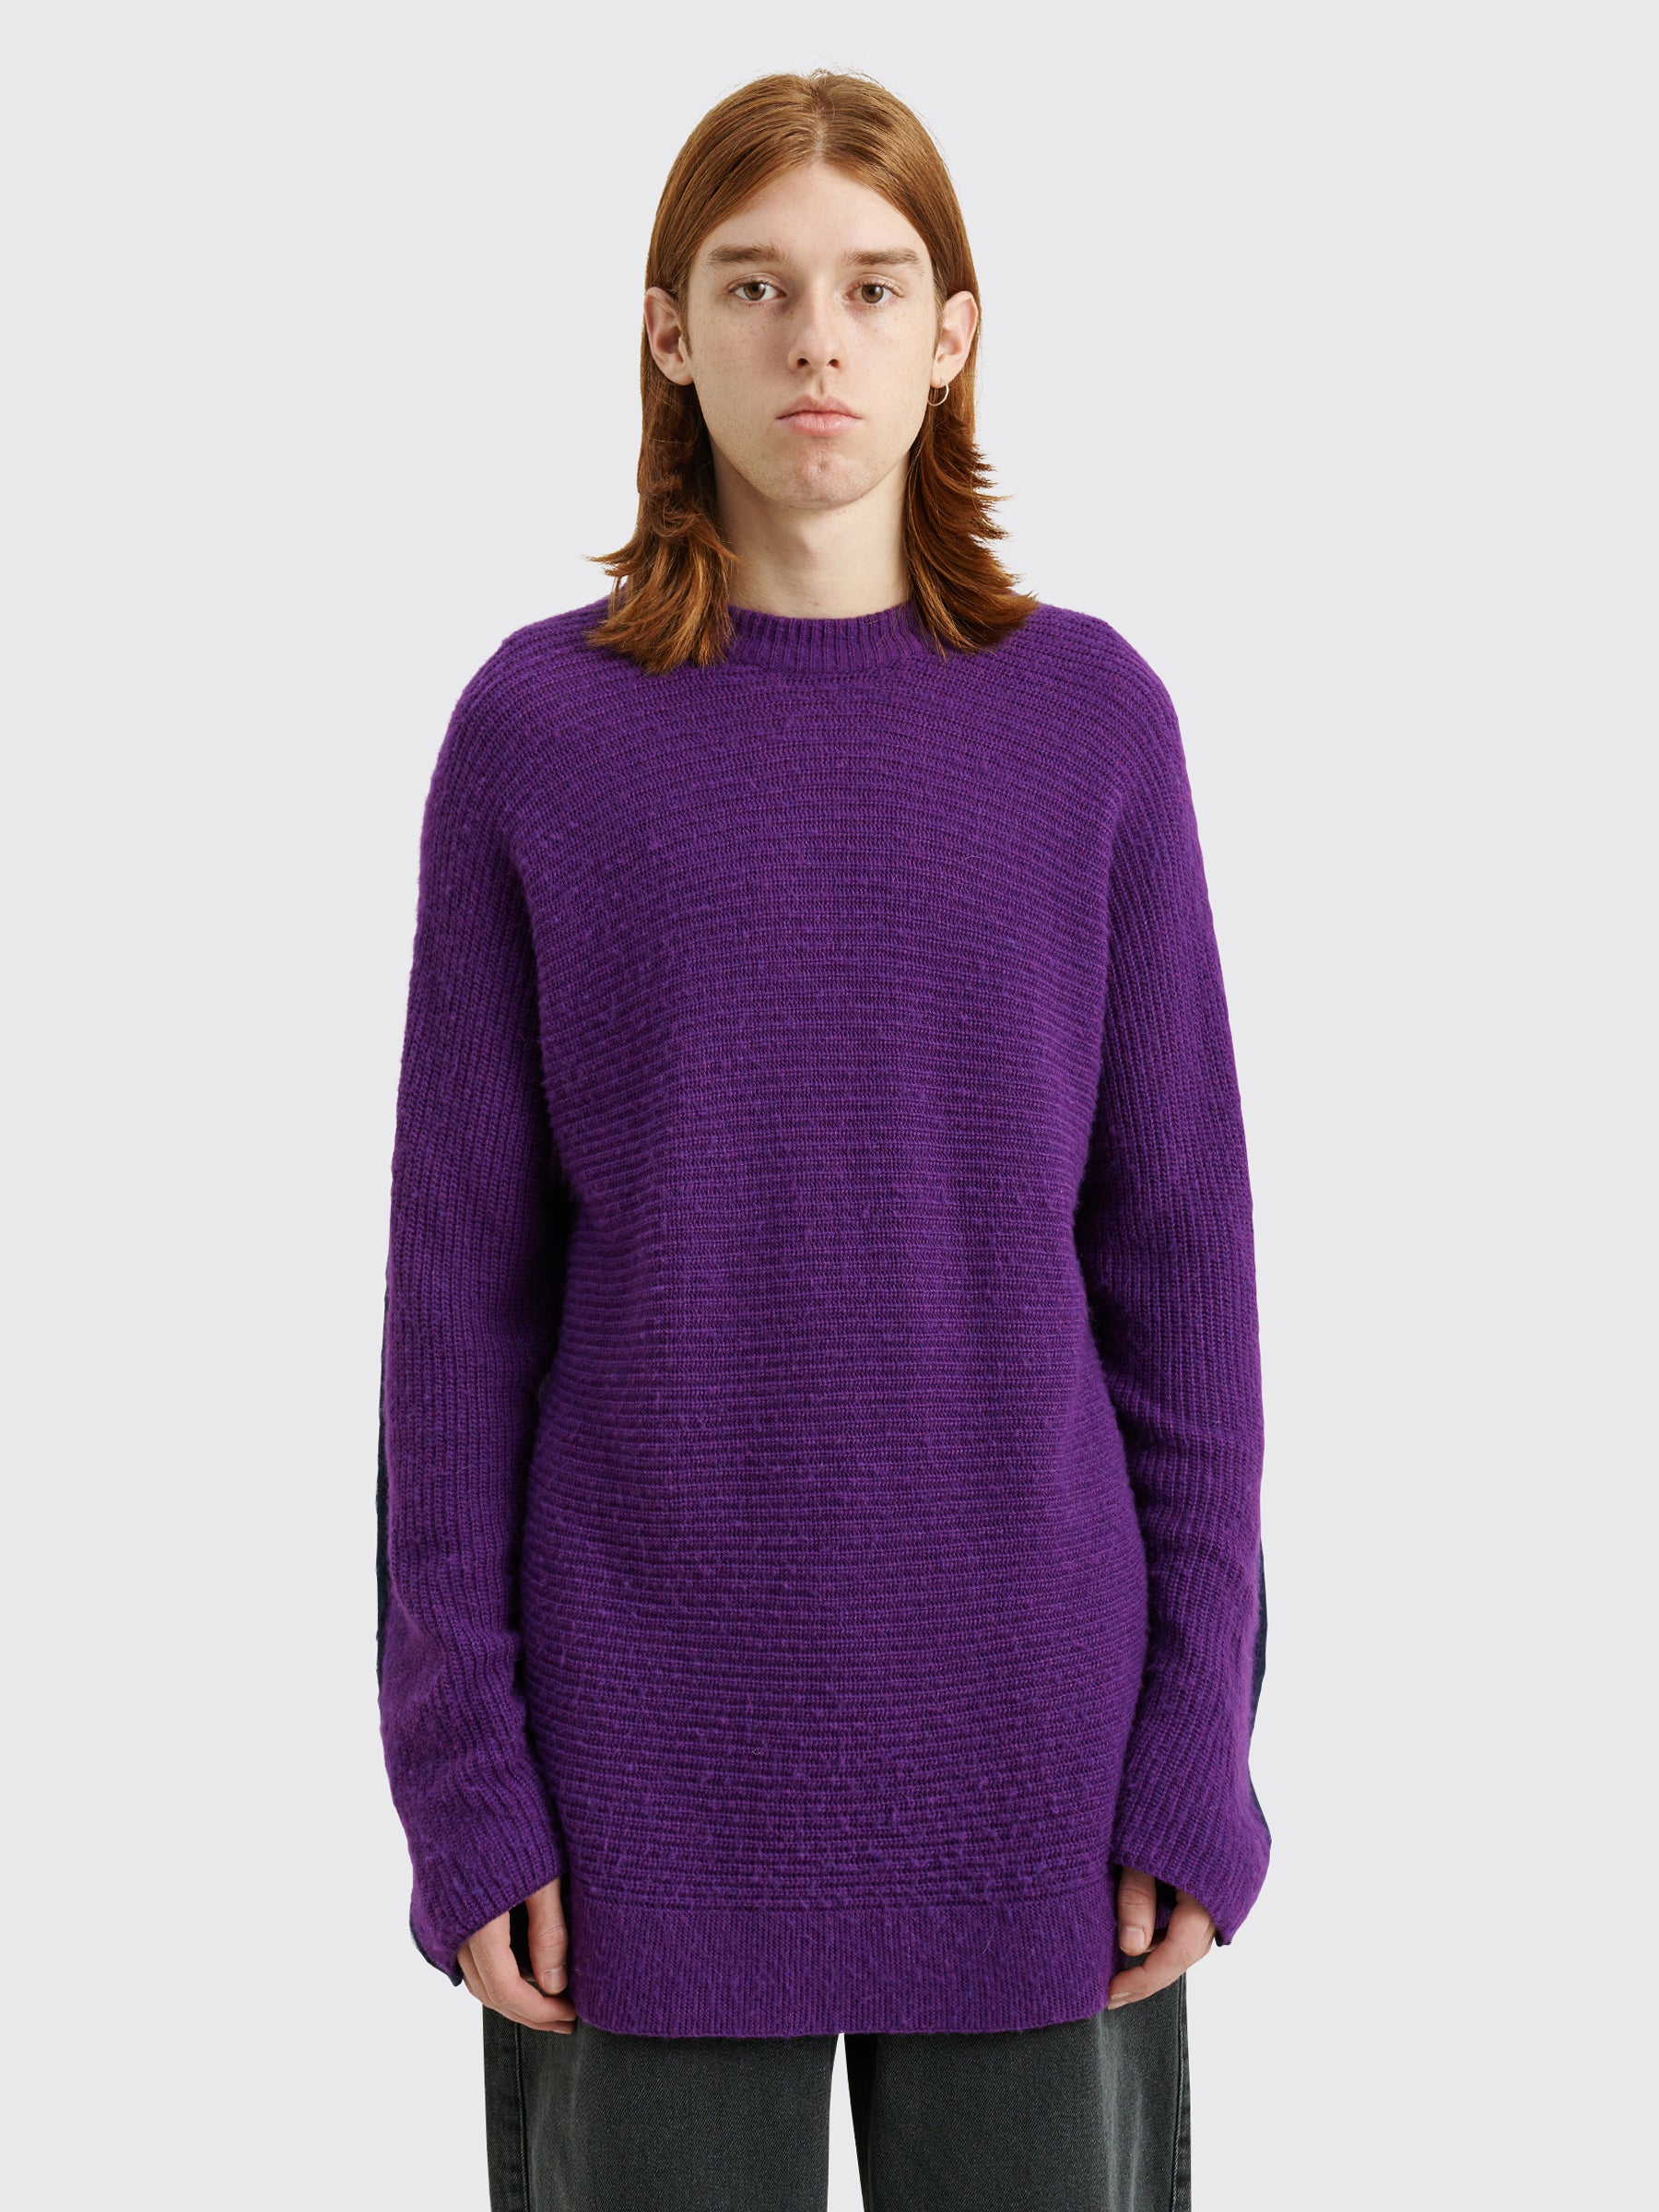 TRÈS BIEN everywear Split Knitted Sweater Wool Blend Purple / Navy